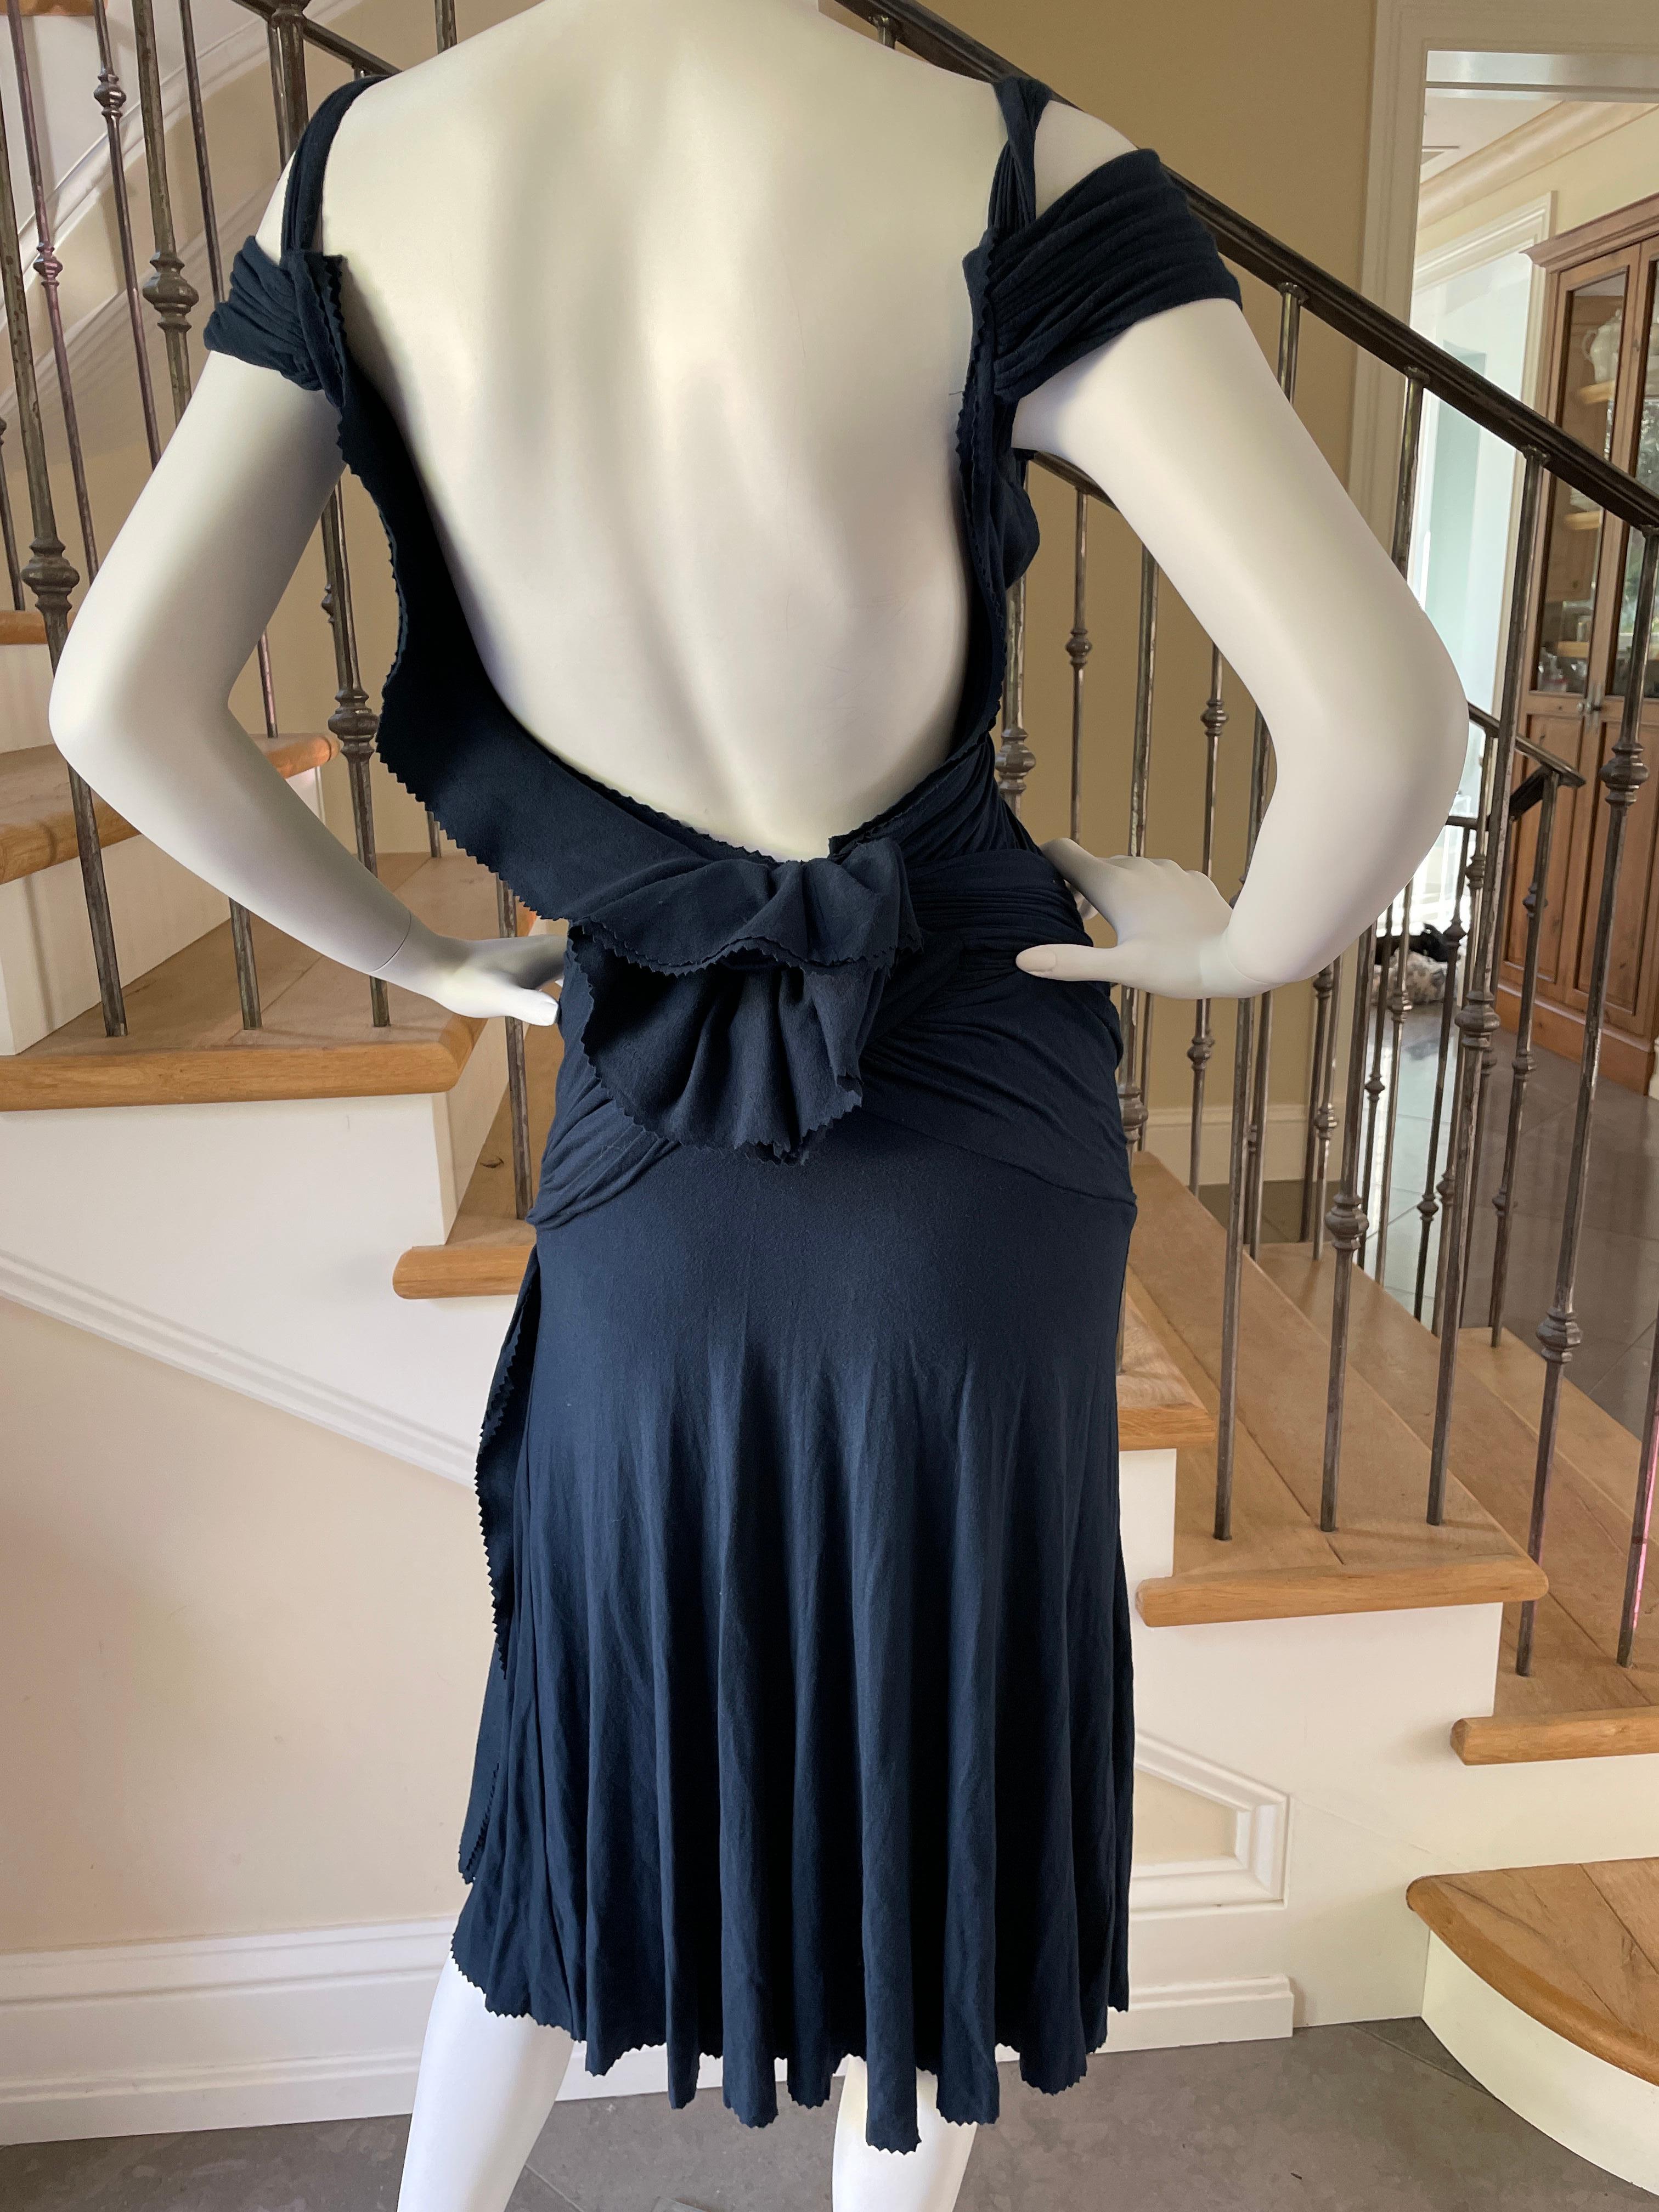 Black Donna Karan Vintage 1990's Draped Navy Blue Cocktail Dress with Plunging Back For Sale